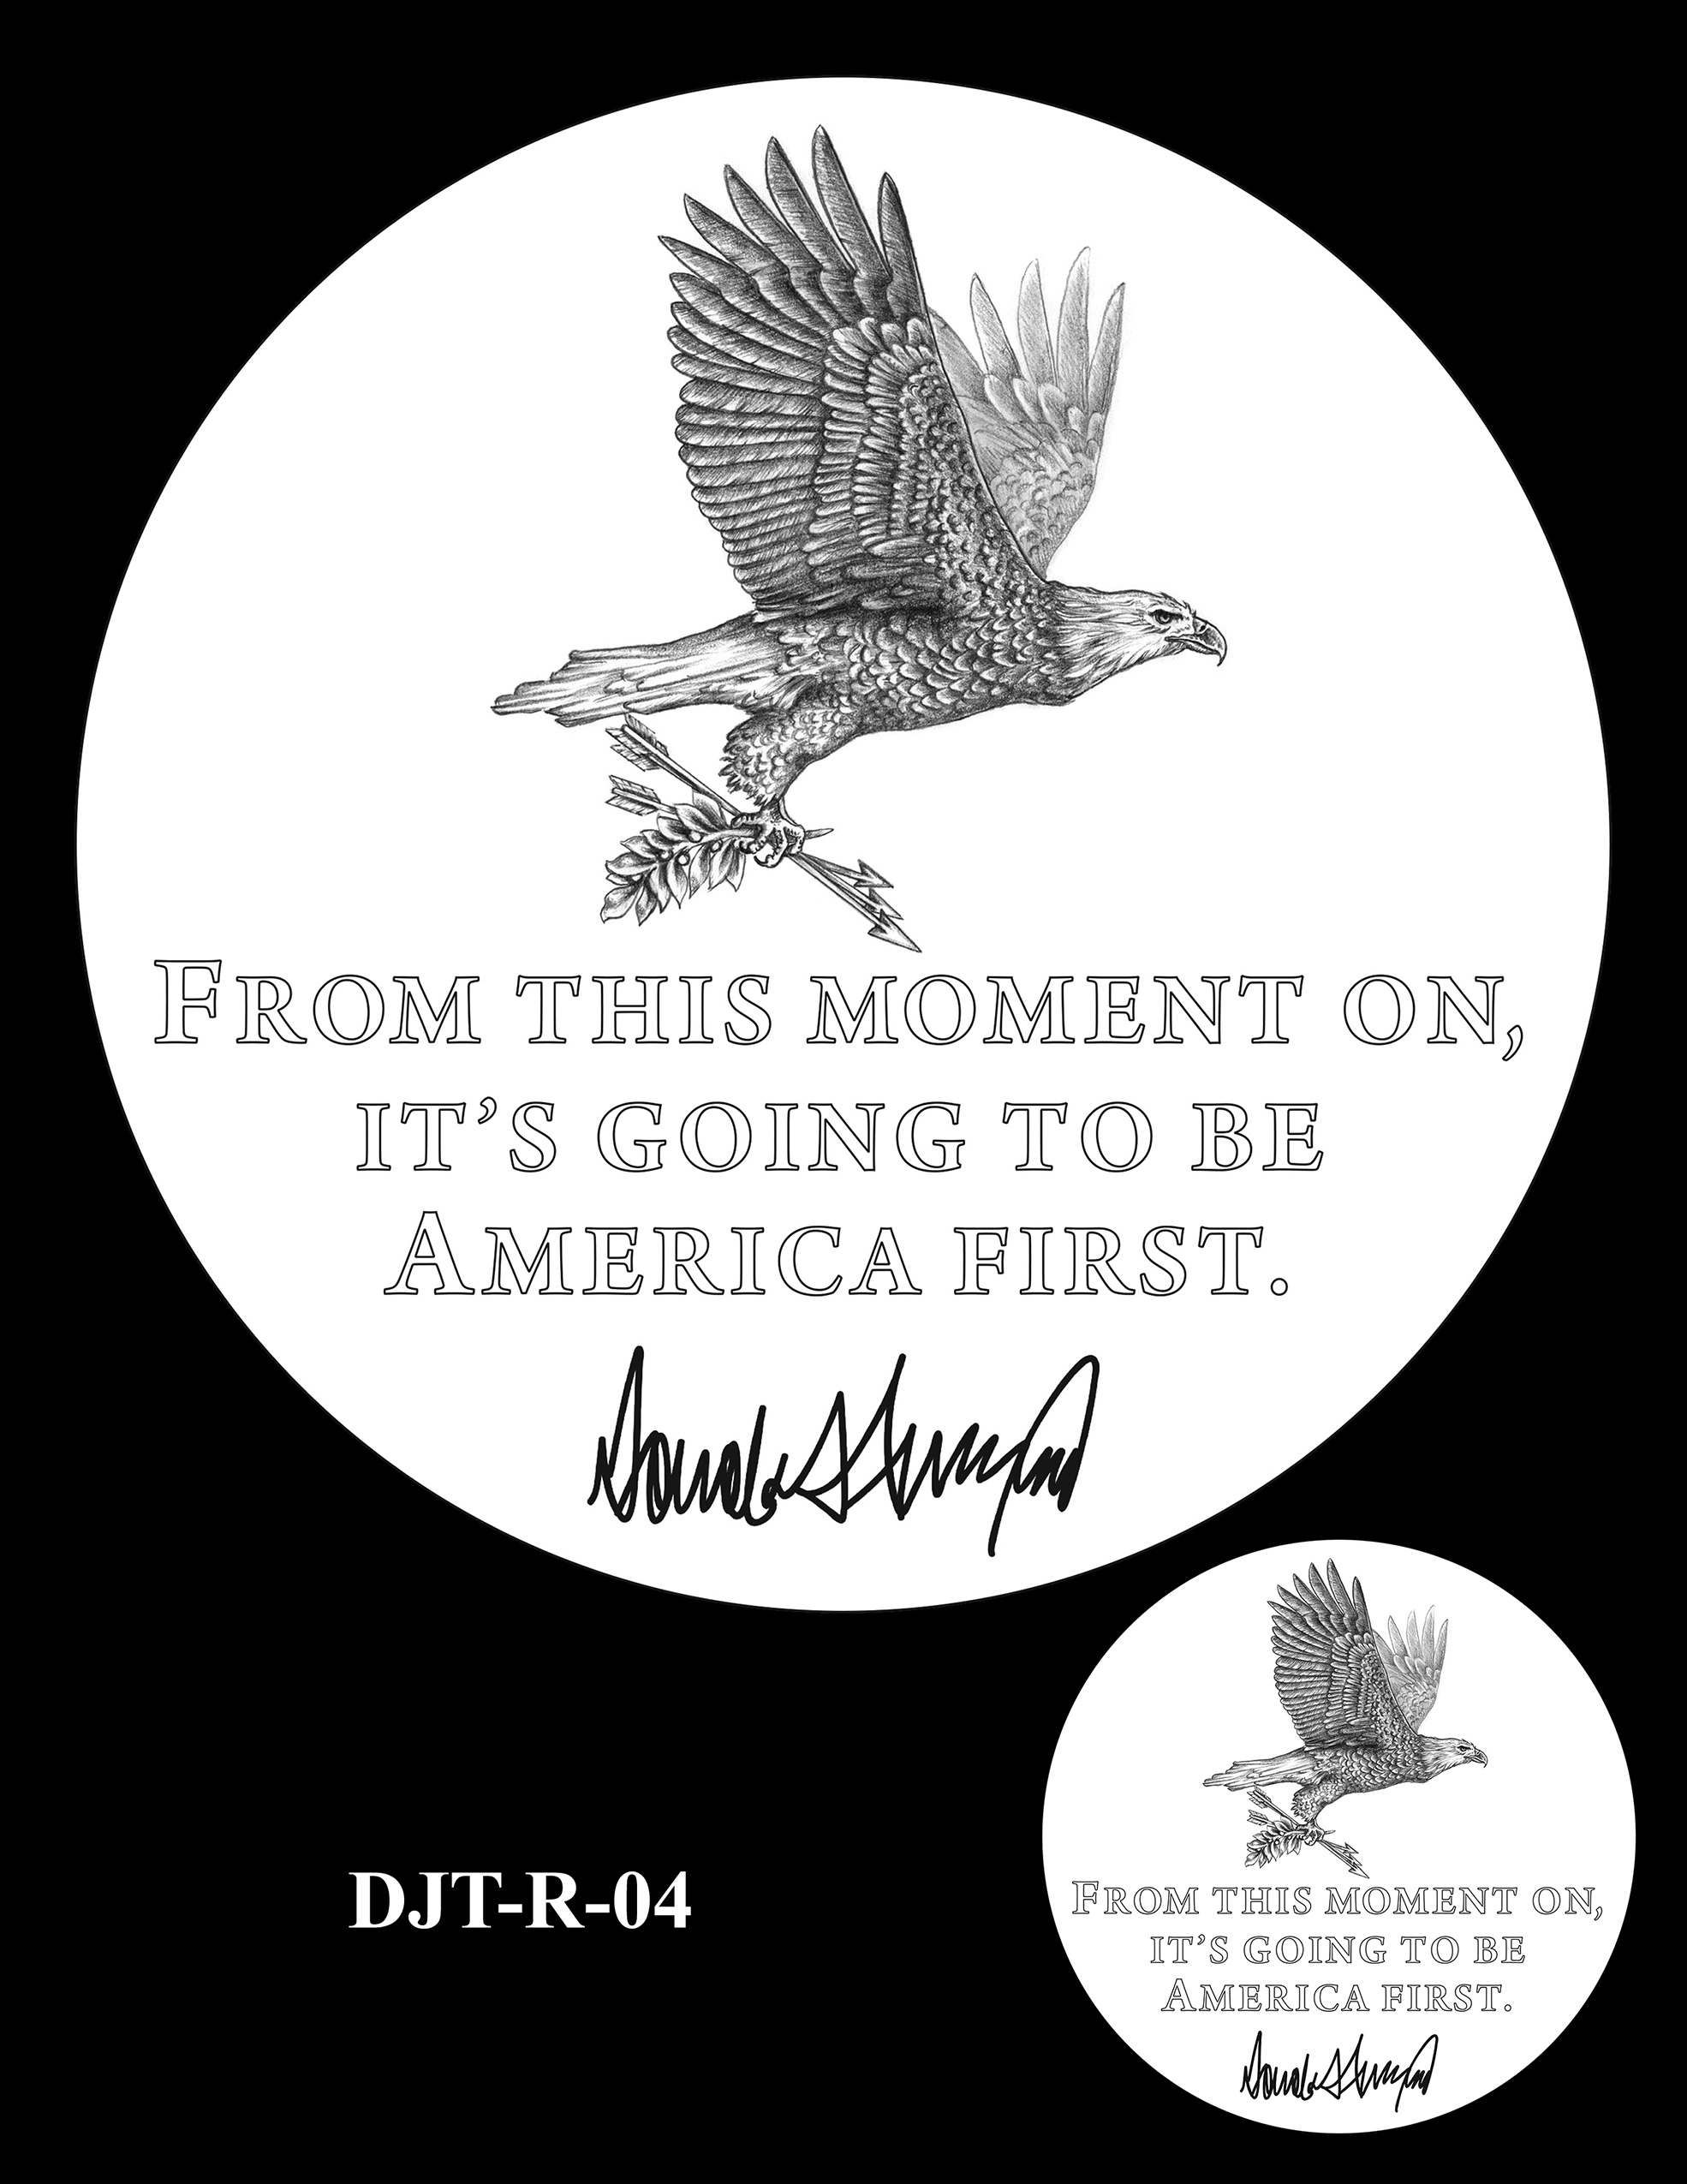 DJT-R-04 -- Donald J. Trump Presidential Medal